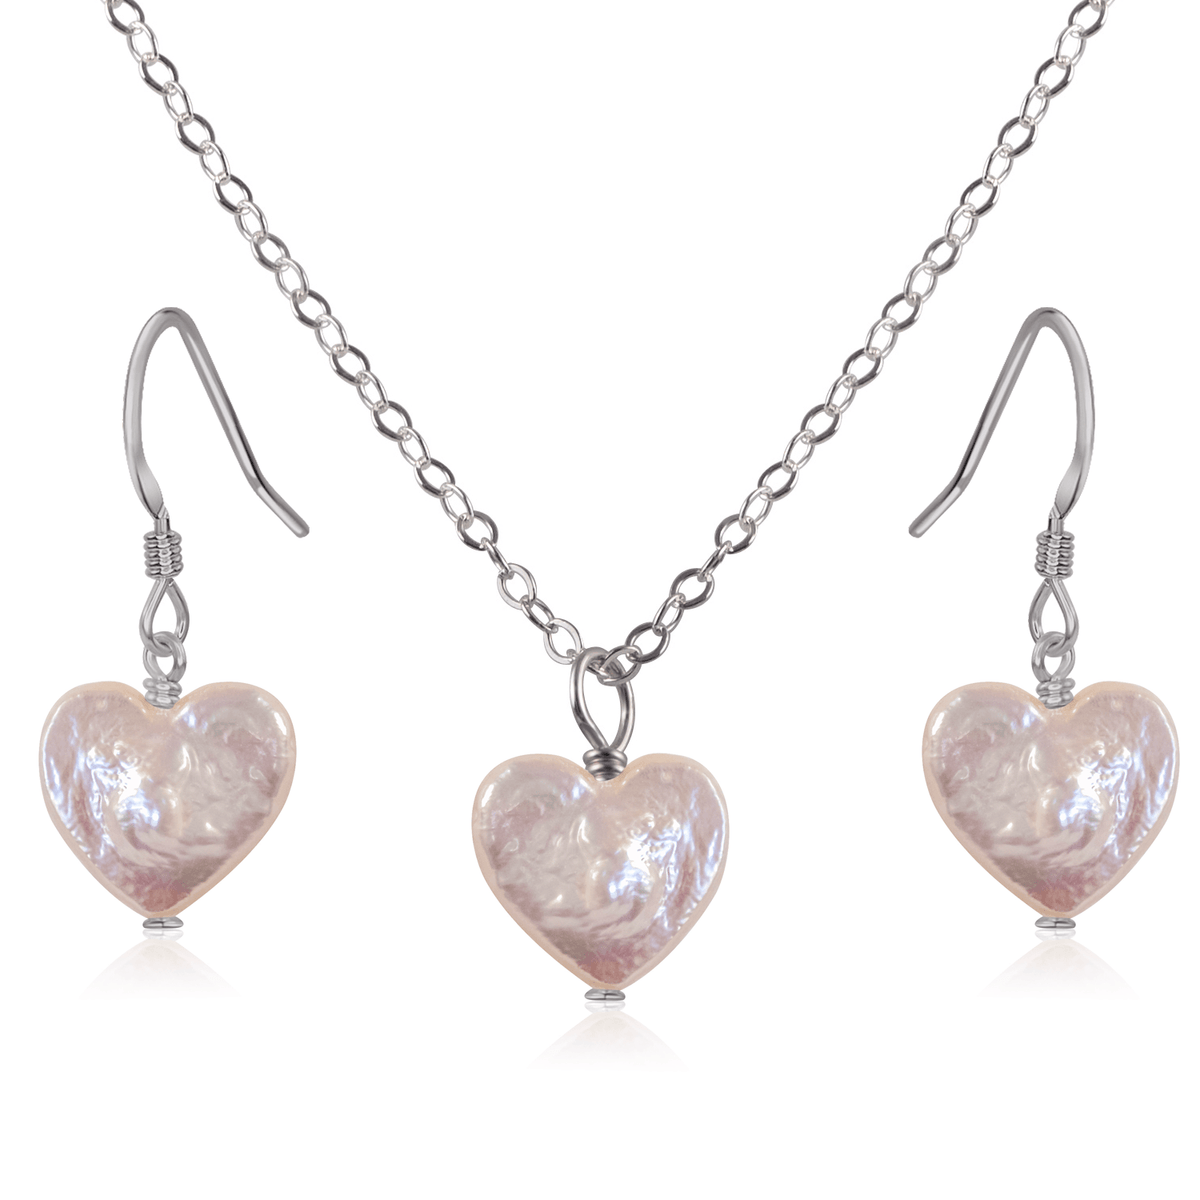 Freshwater Pearl Heart Jewellery Set - Freshwater Pearl Heart Jewellery Set - Stainless Steel / Cable / Necklace & Earrings - Luna Tide Handmade Crystal Jewellery